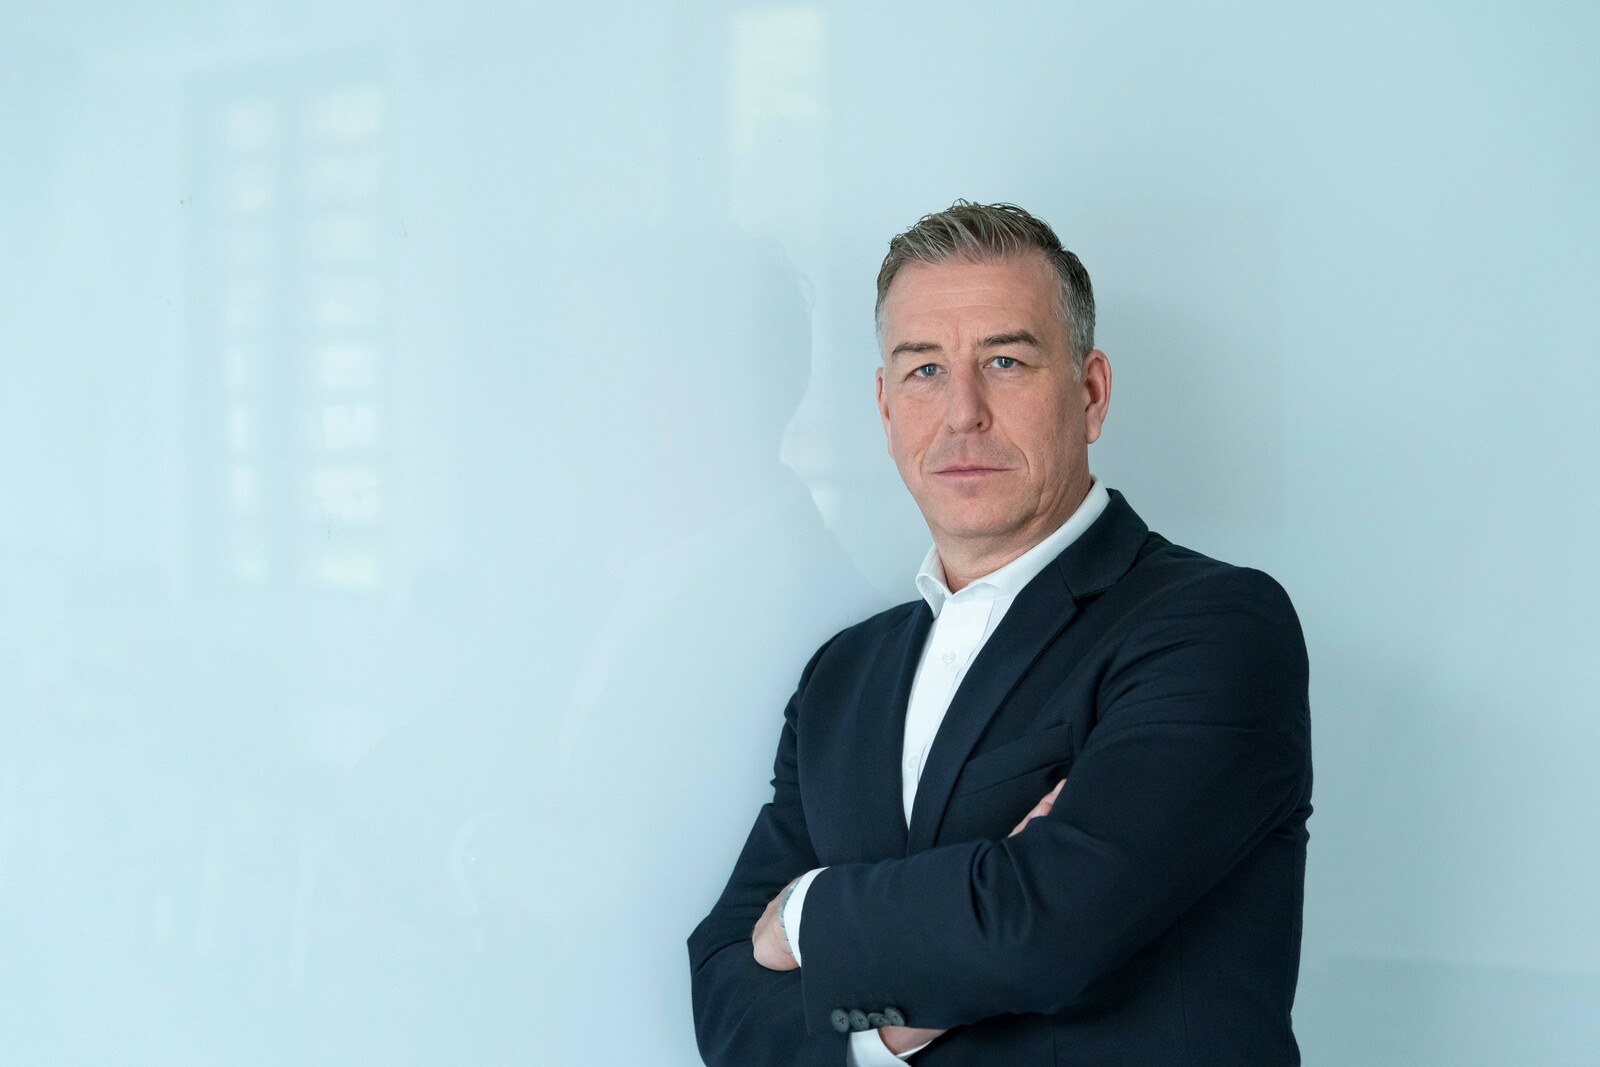 Sein Vorgänger Marco Lessacher wird als Vice President Customer, Brand and Sales für BMW Group Financial Services die Verantwortung für die globalen Vertriebsaktivitäten der BMW-Finanzdienstleistungssparte übernehmen.